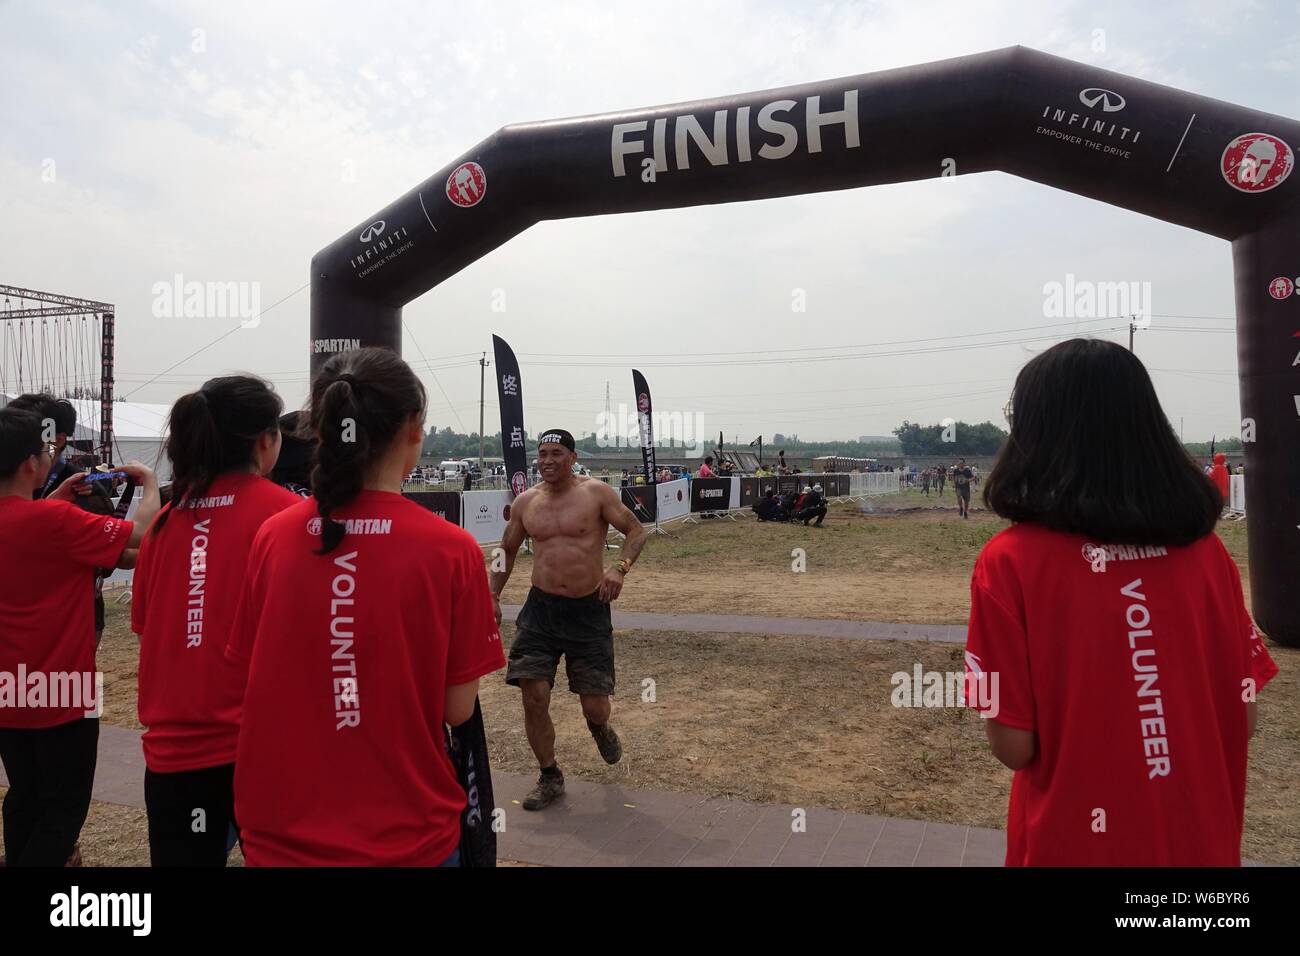 Los participantes competirán en el 2018 Infiniti Spartan Race carrera de obstáculos en Beijing, China, 19 de mayo de 2018. Conocido como el mejor del mundo carrera de obstáculos serie Foto de stock